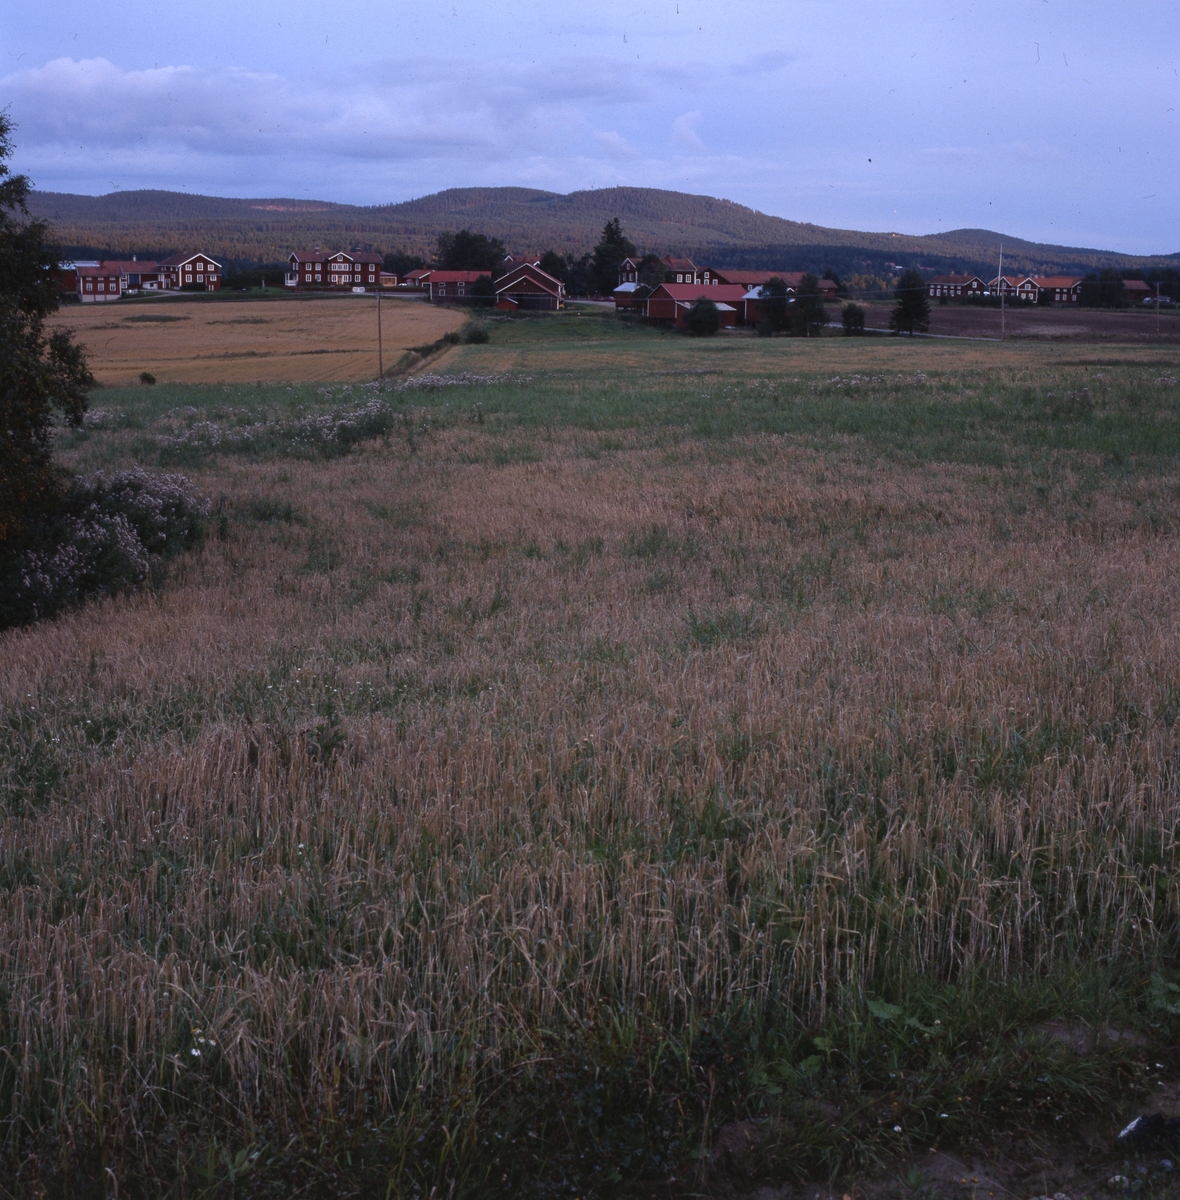 Norrvåga by i Järvsö 28 september 2001. De röda, stora hälsingegårdarna ligger som på rad med bergen i bakgrunden. Framför breder ett jordbrukslandskap ut sig.